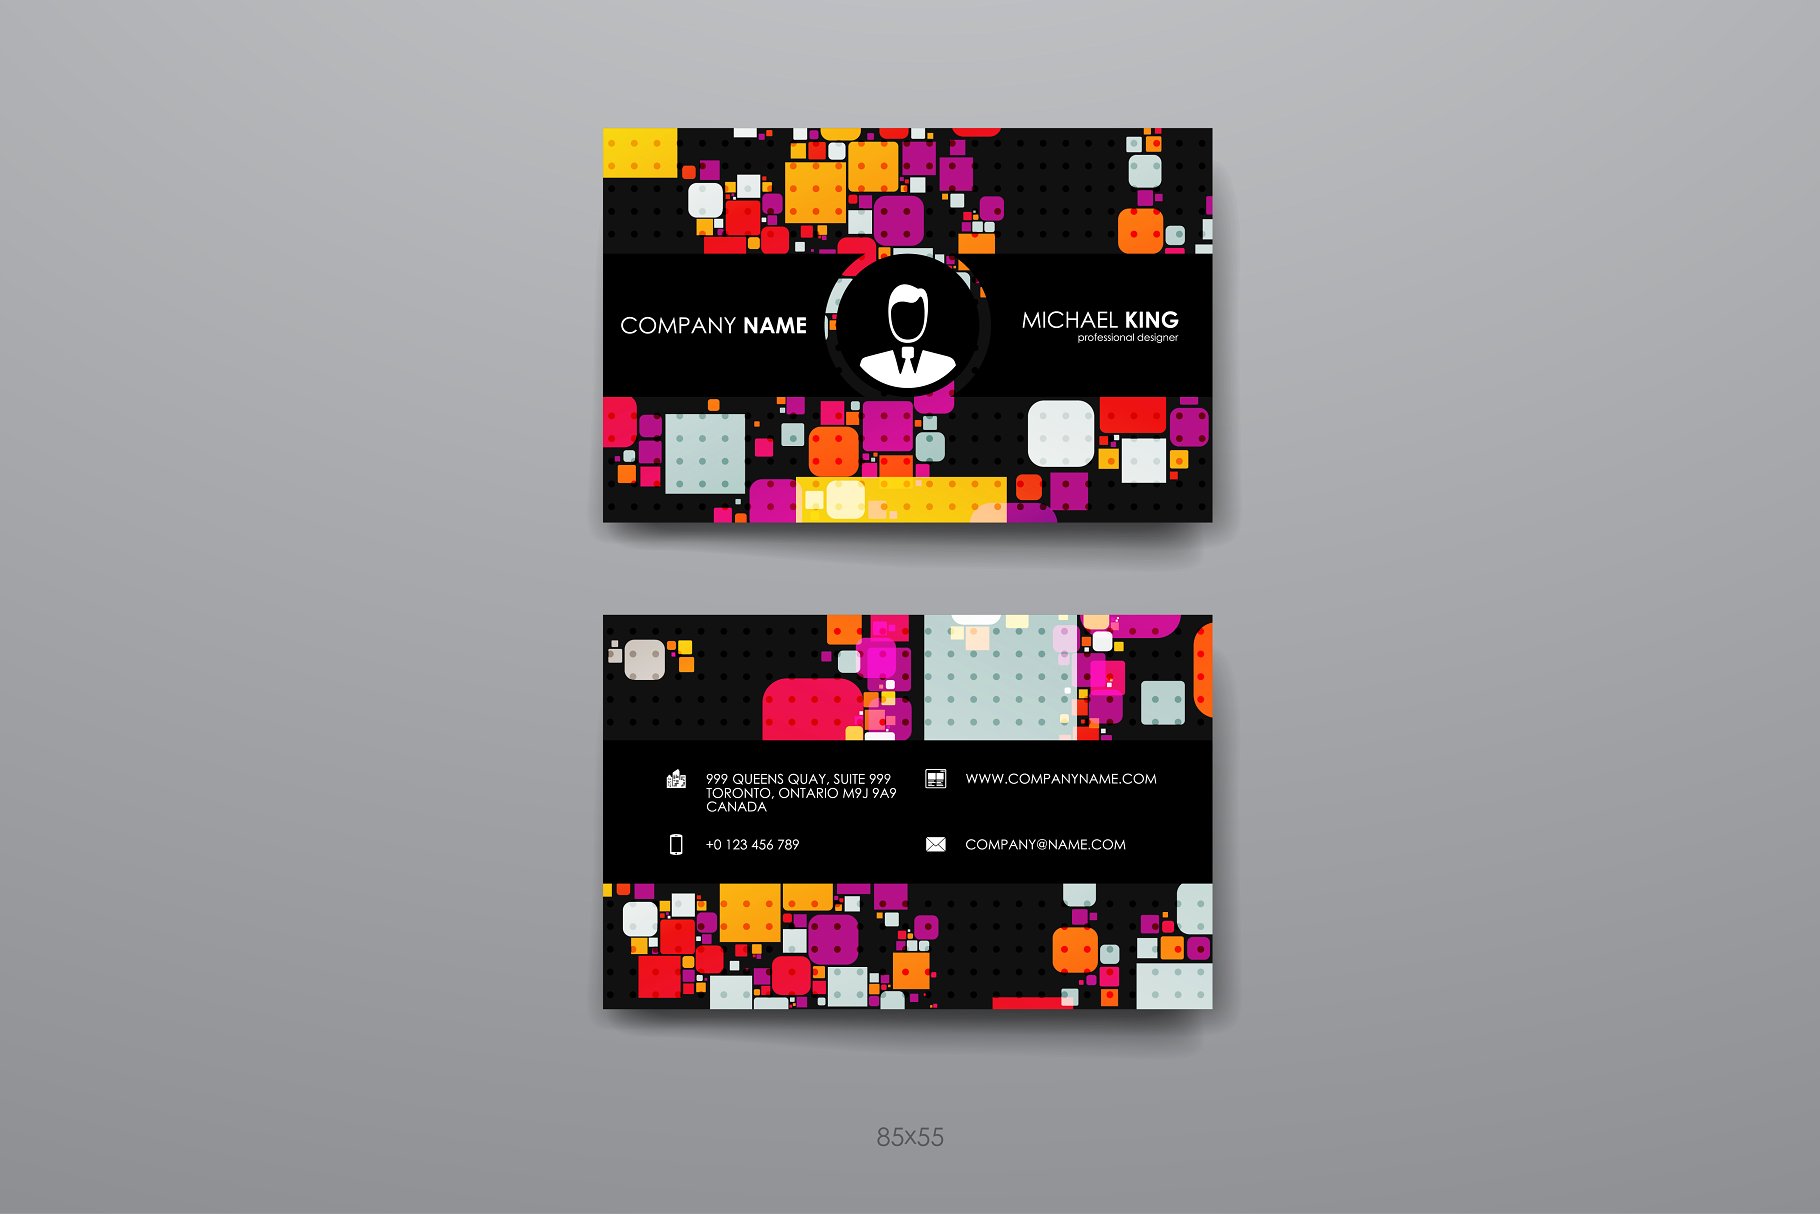 8款企业个人名片抽象设计模板 8 Business Cards插图(7)